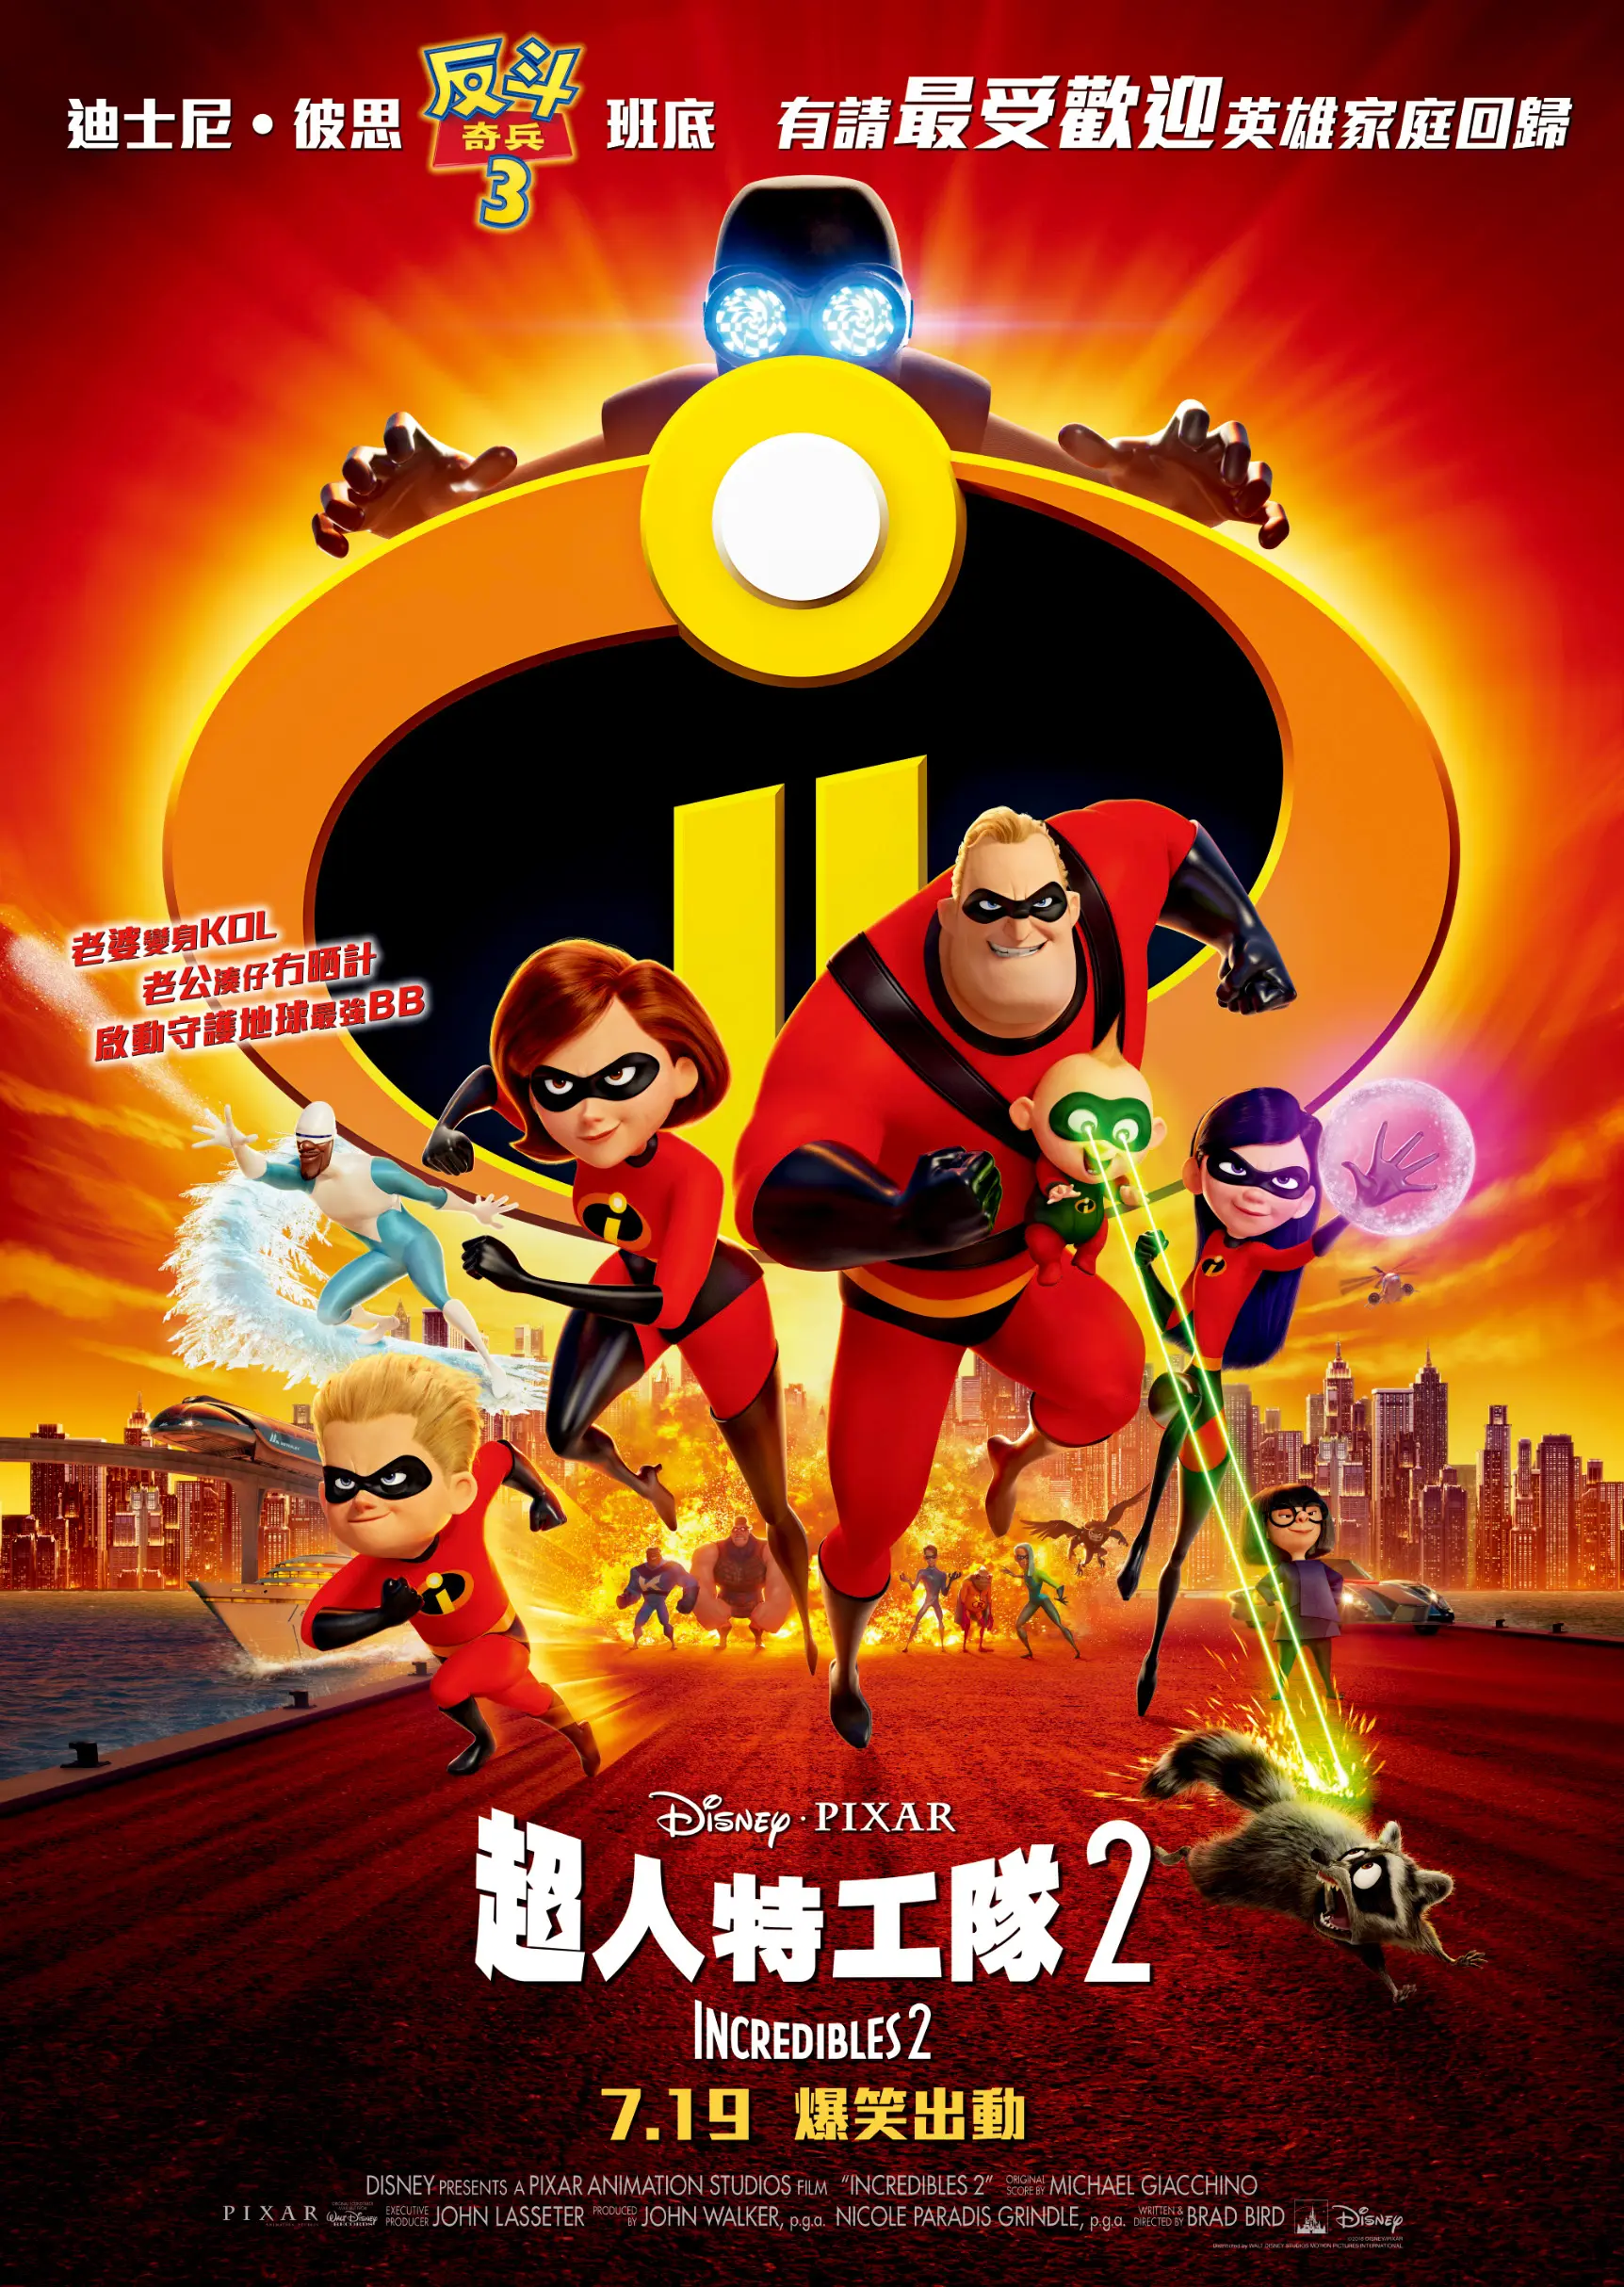 2018-07-19 Incredibles 2 Regular poster_update.jpg